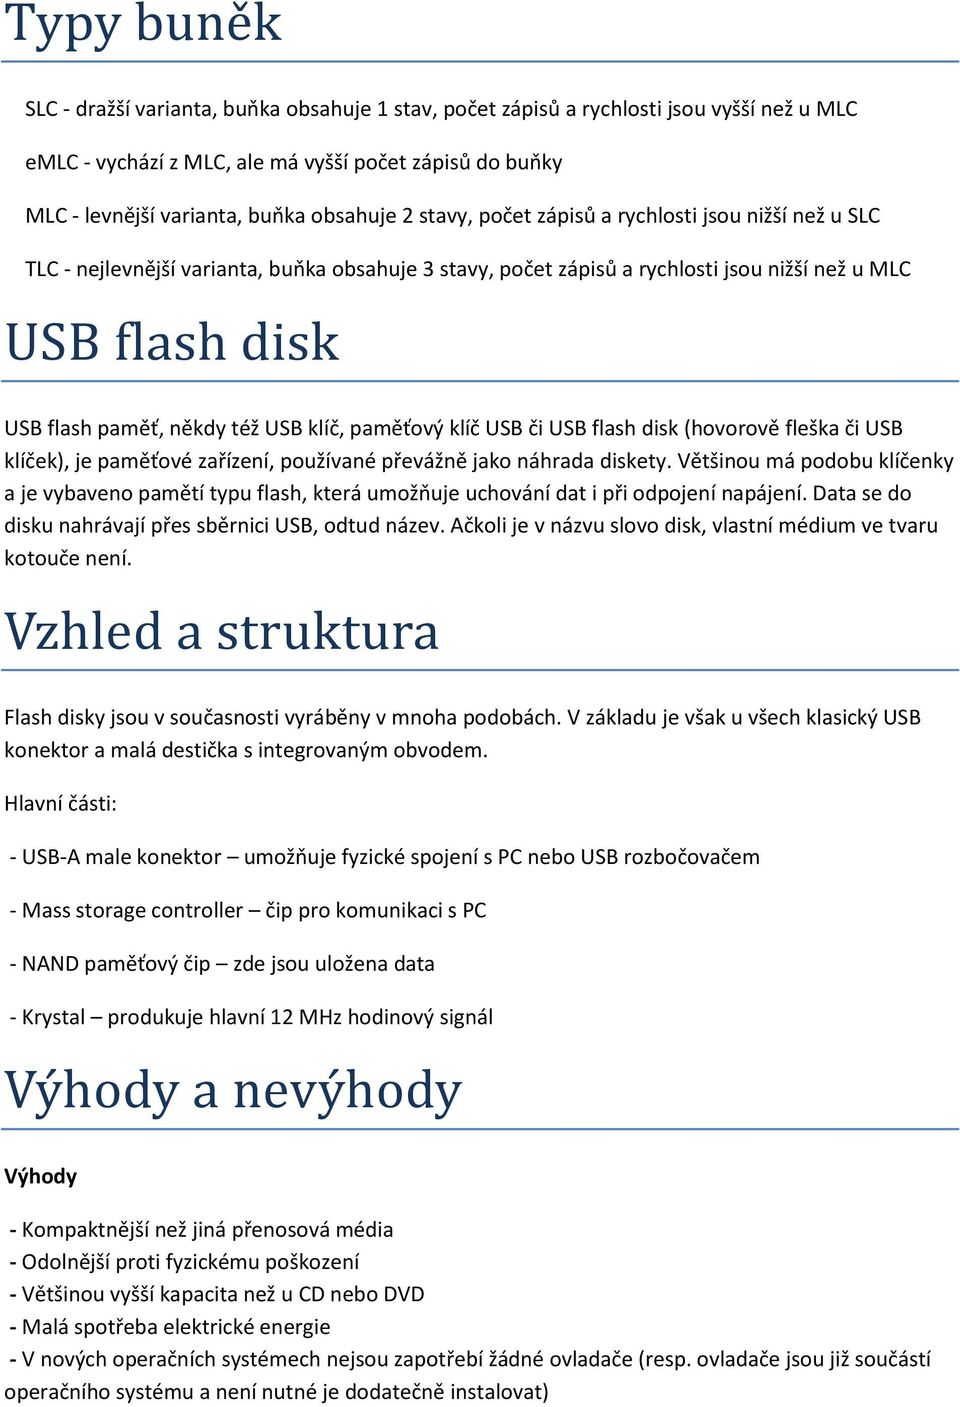 klíč, paměťový klíč USB či USB flash disk (hovorově fleška či USB klíček), je paměťové zařízení, používané převážně jako náhrada diskety.